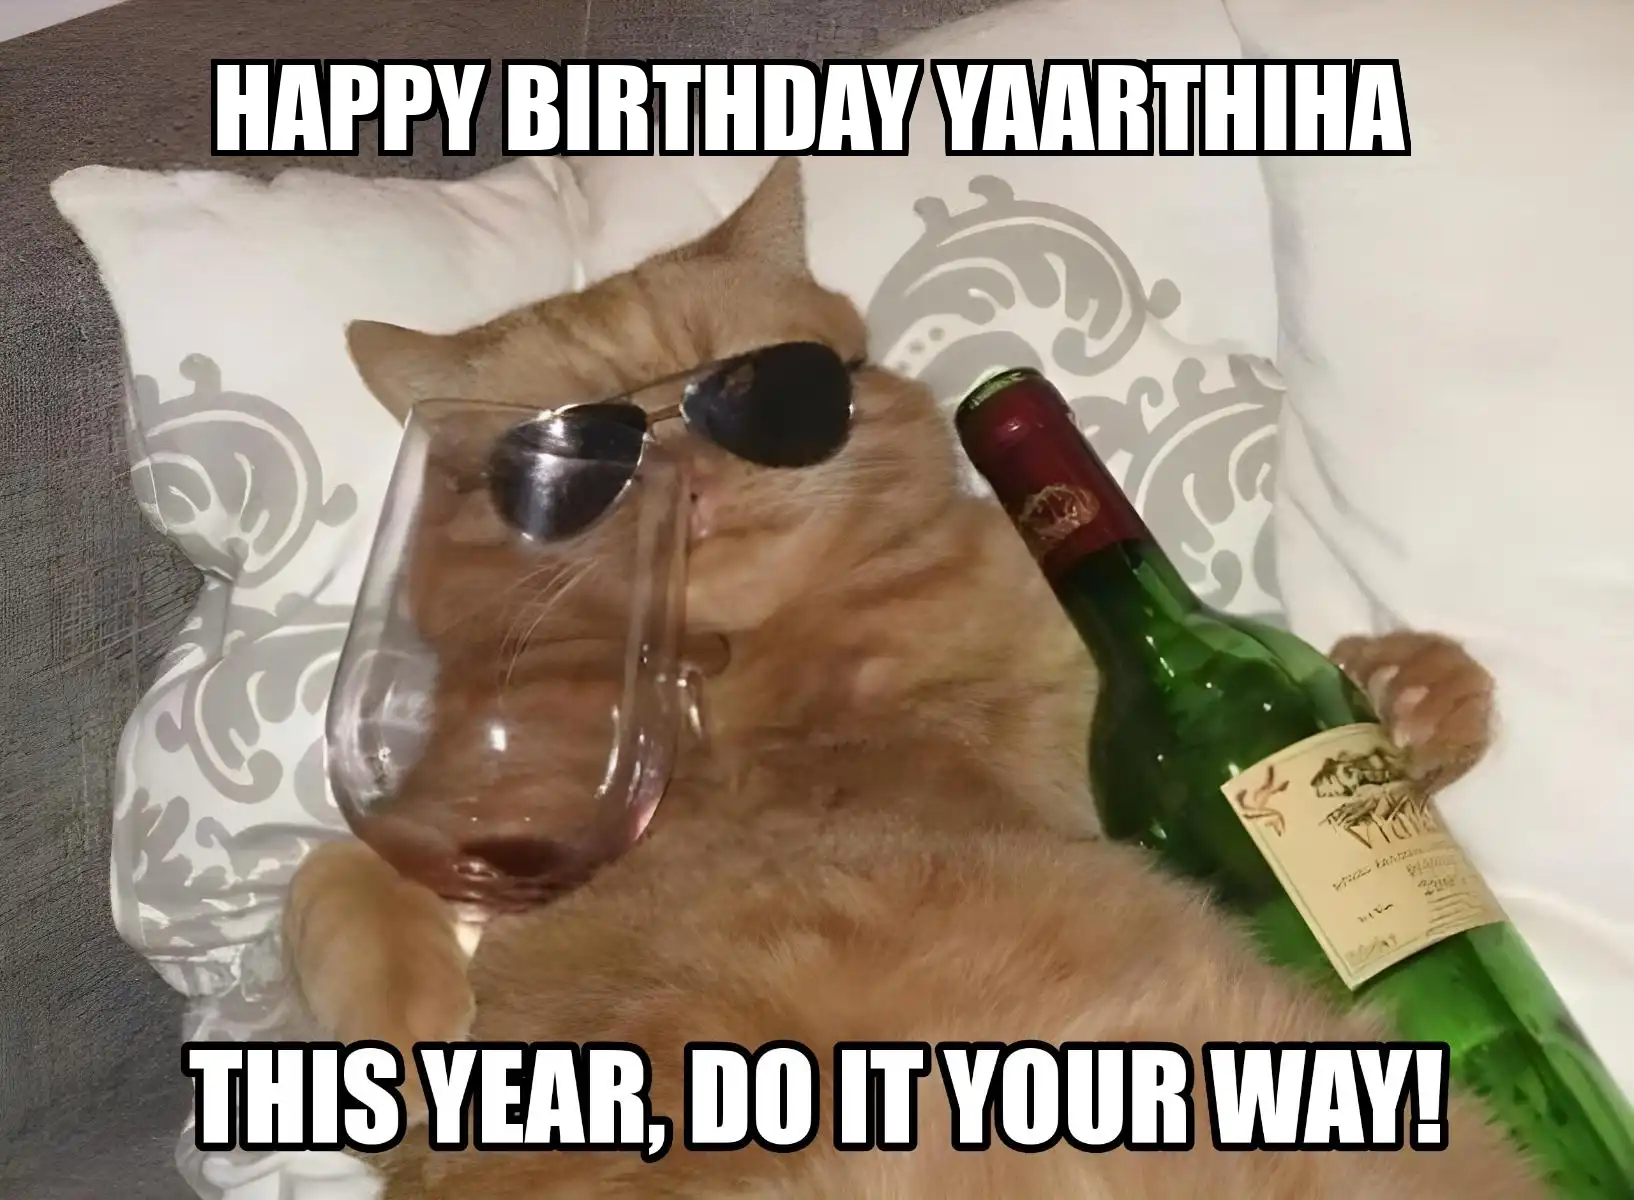 Happy Birthday Yaarthiha This Year Do It Your Way Meme